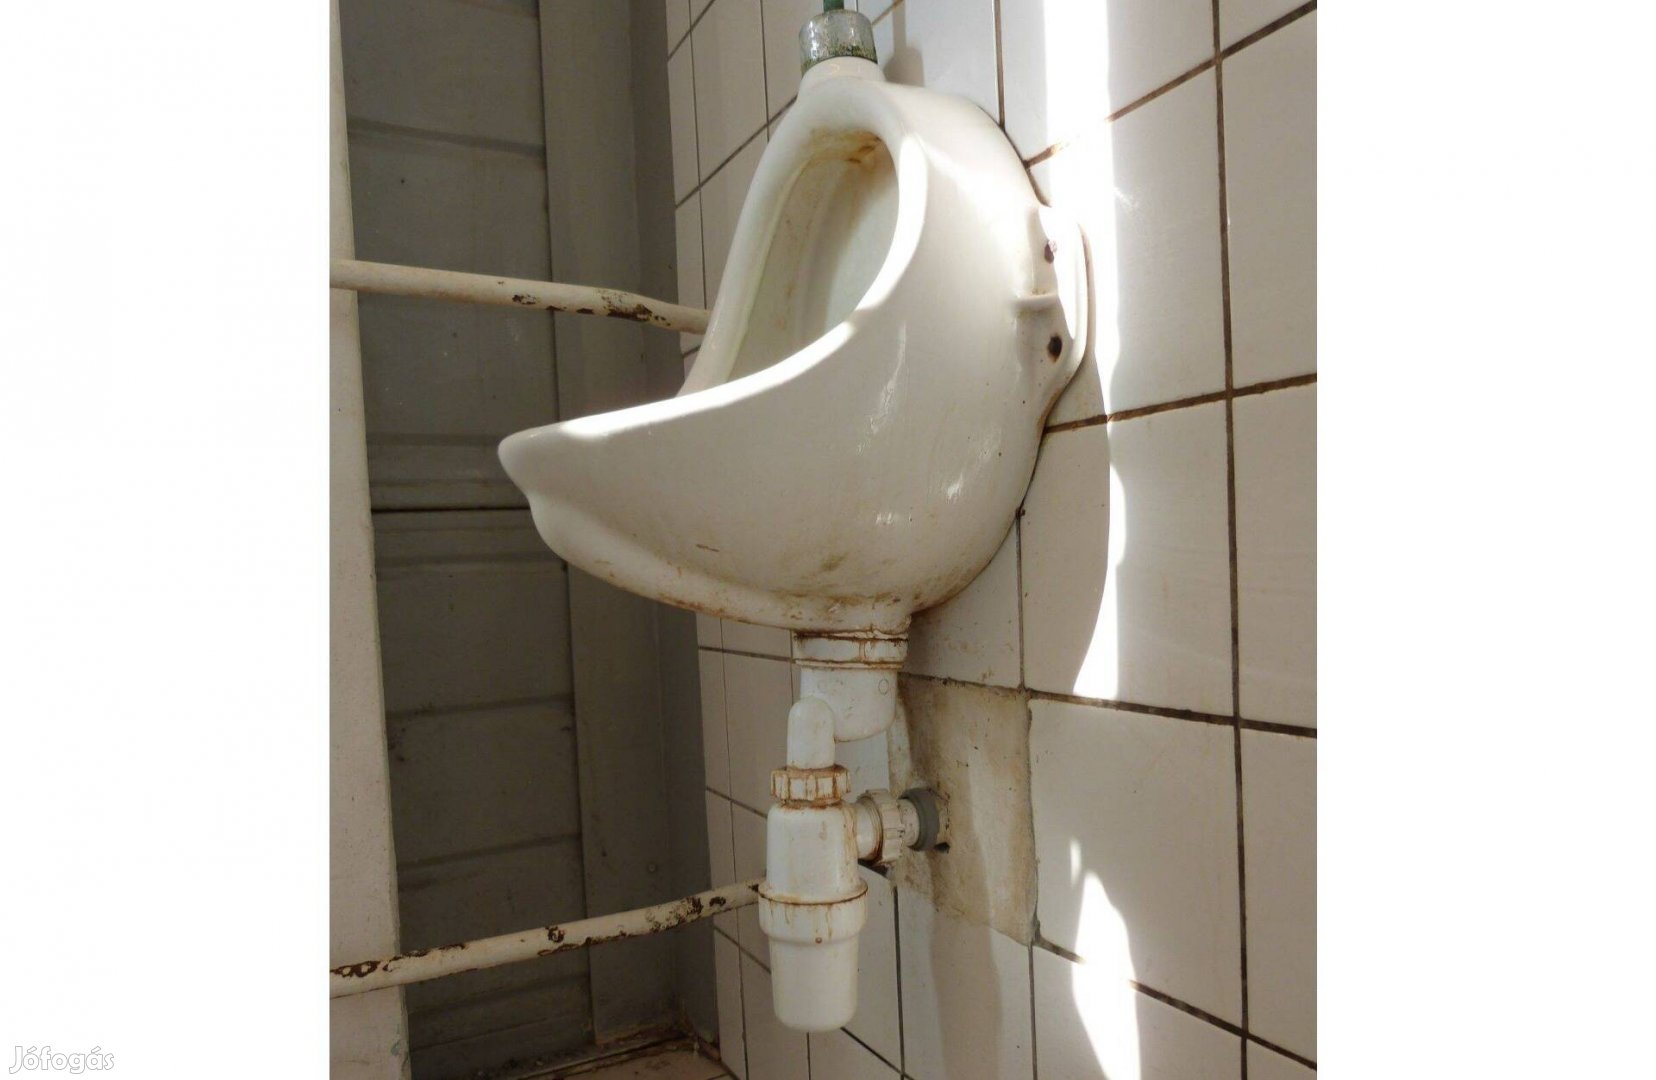 Ingyen elvihető használt piszoár WC